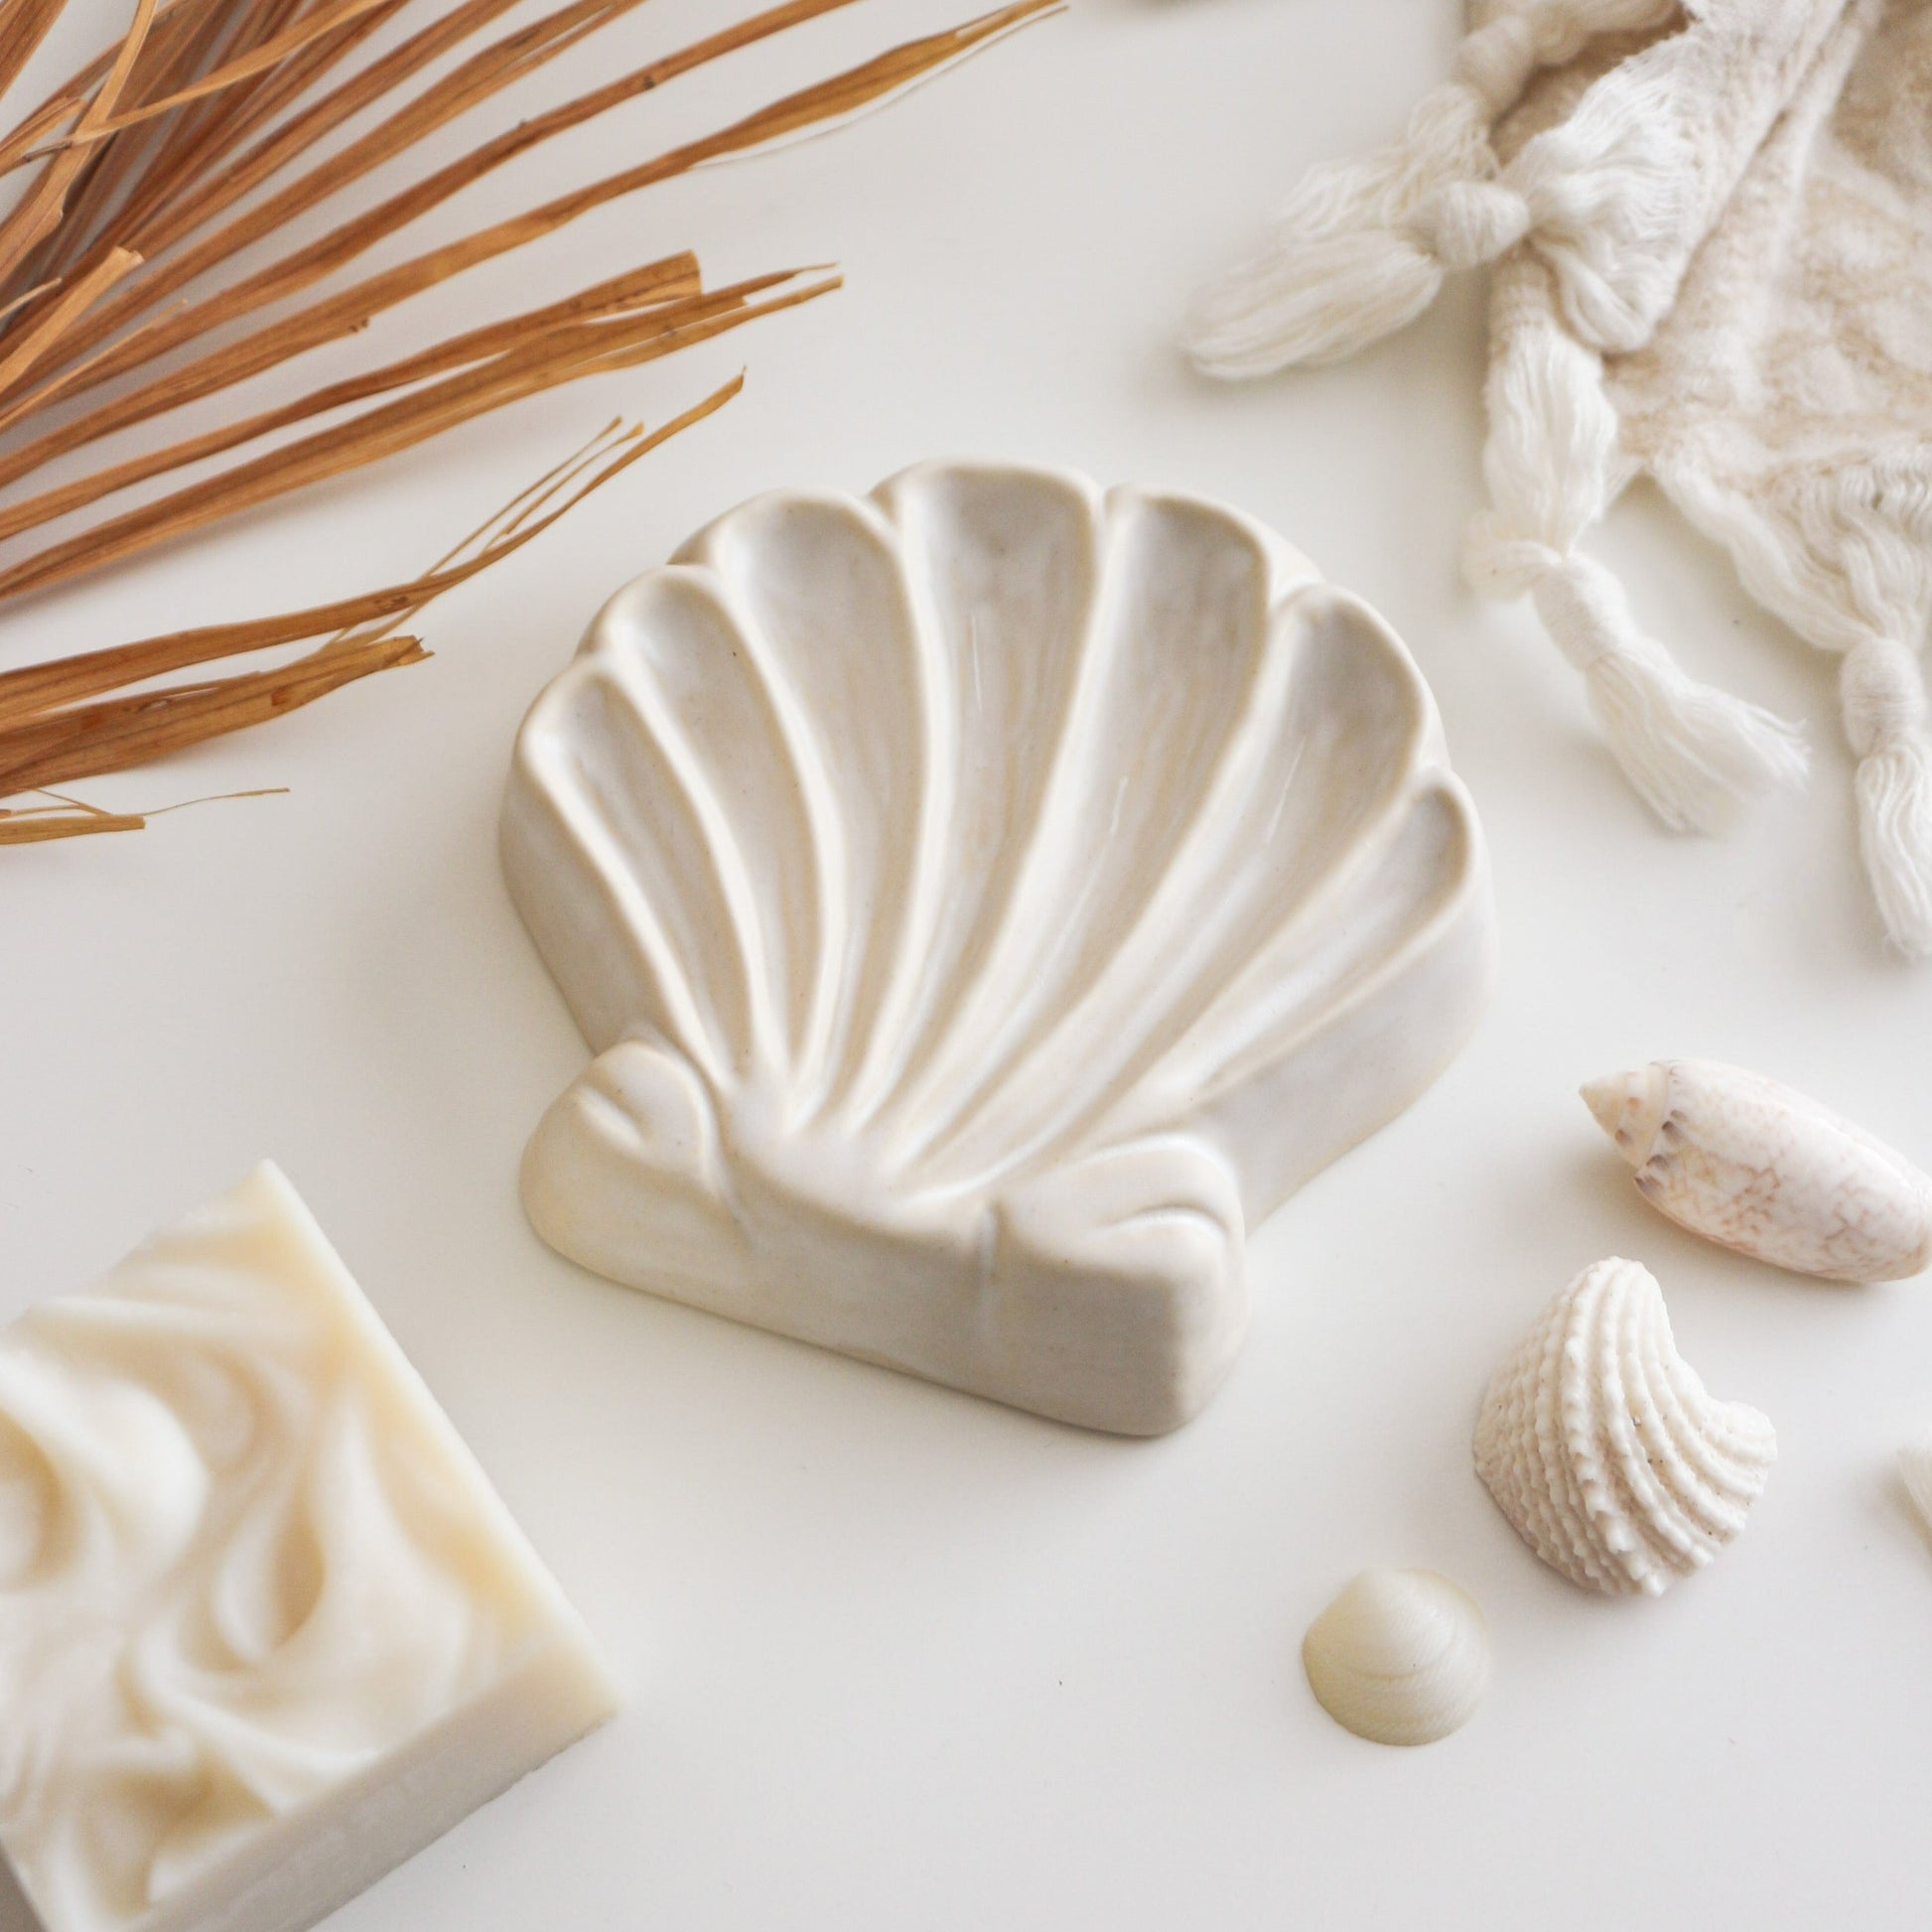 Beach Soap Dish – Tofino Soap Company ®